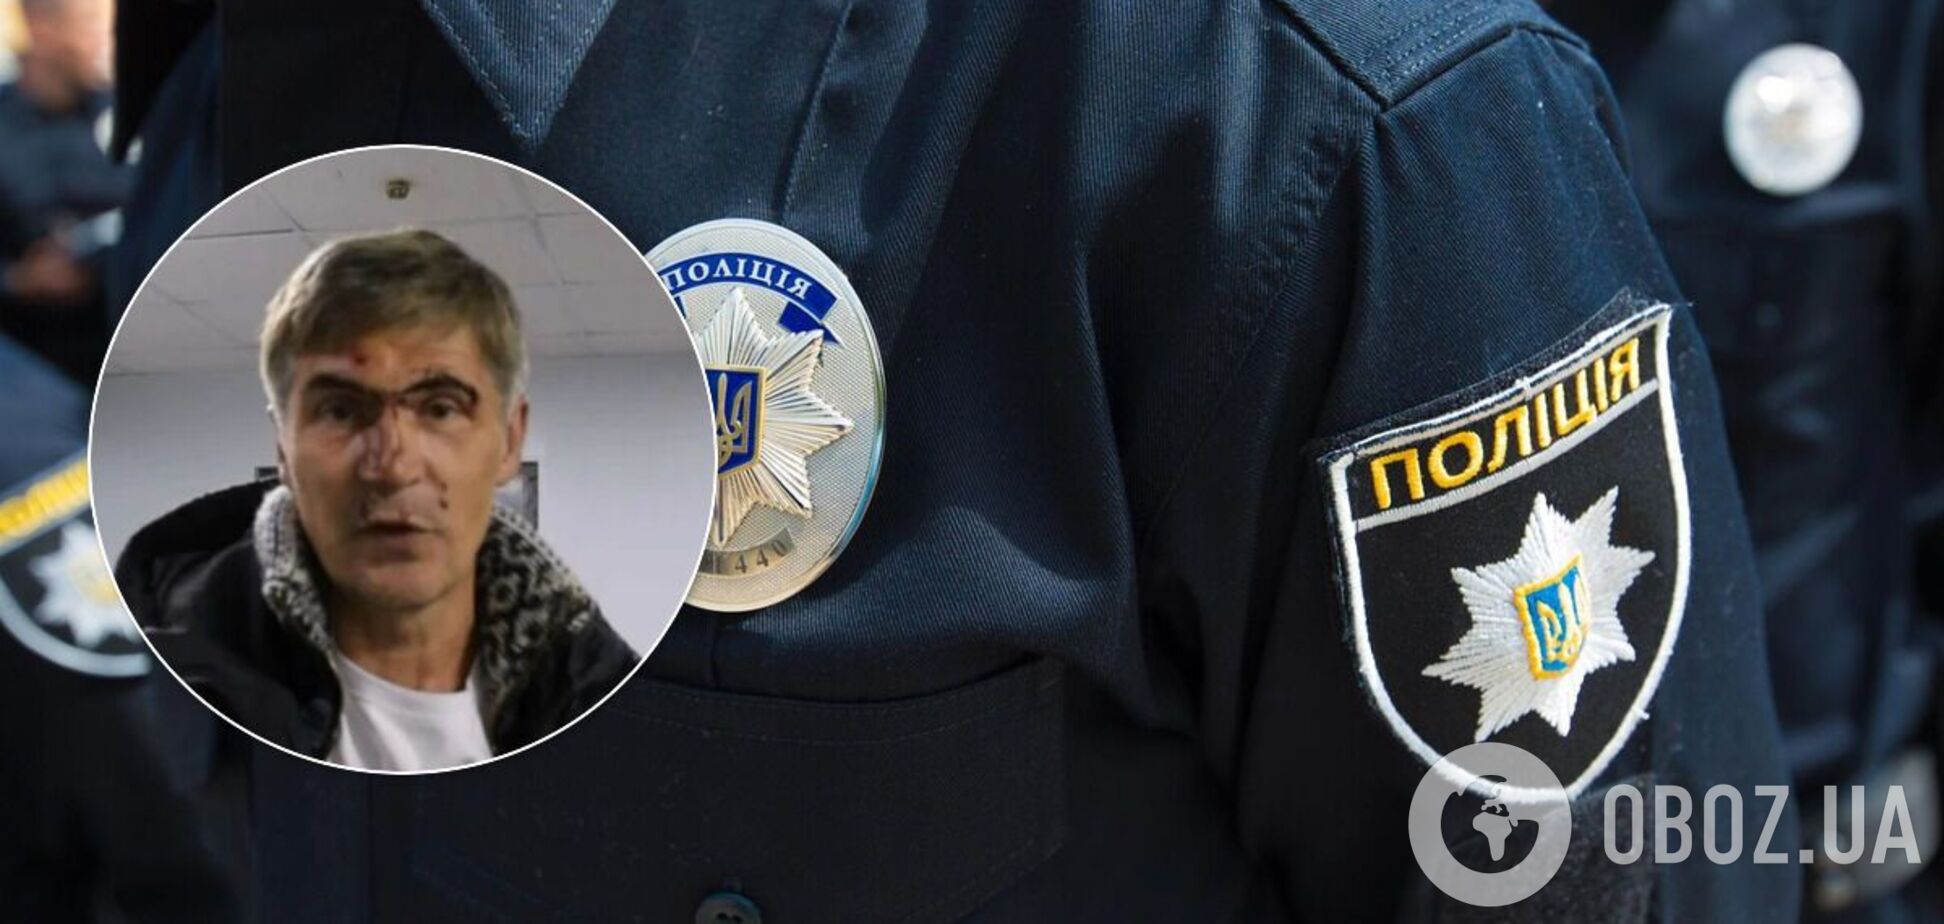 В Николаеве задержан экс-нардеп: пьяным на авто скрывался от полиции. Видео